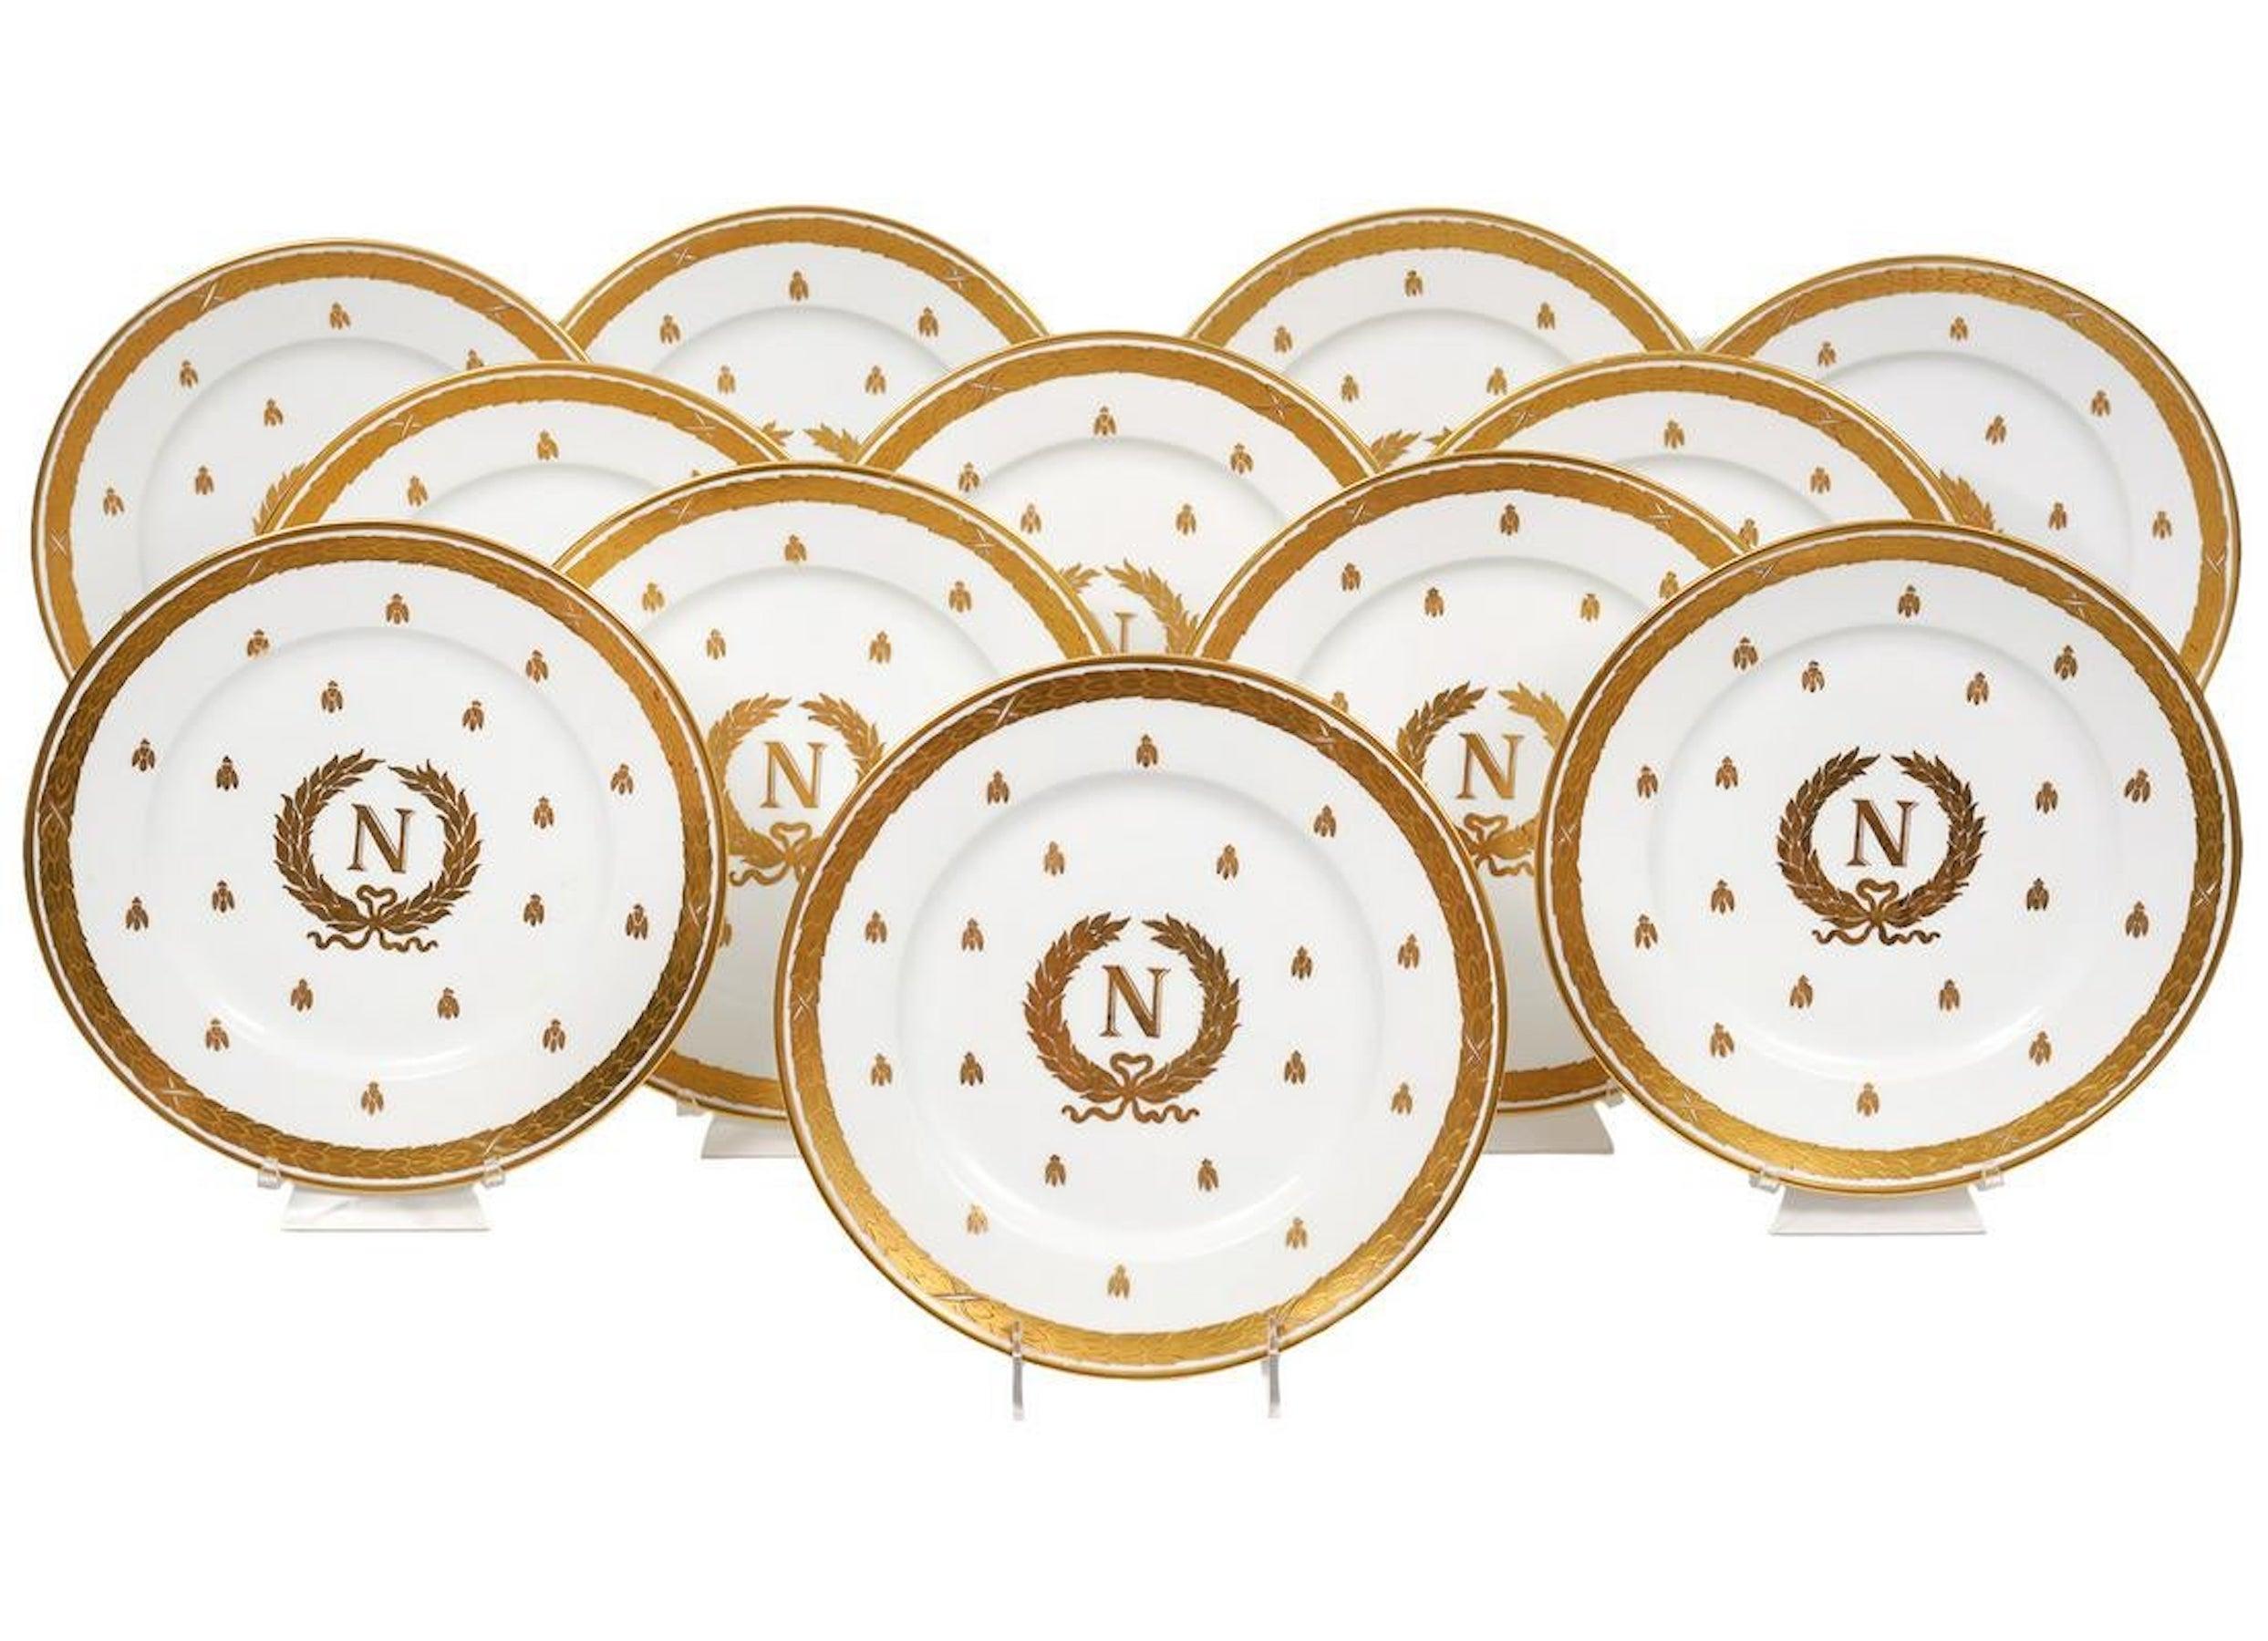 12 vergoldete, emaillierte napoleonische Teller aus Limoges, um 1900, jeder mit vergoldetem Lorbeerkranz, gefüllt mit goldenen Bienen, in der Mitte ein napoleonisches Wappen mit Lorbeerkranz und monogrammiertem 'N'.
Das Porzellan wurde von Charles